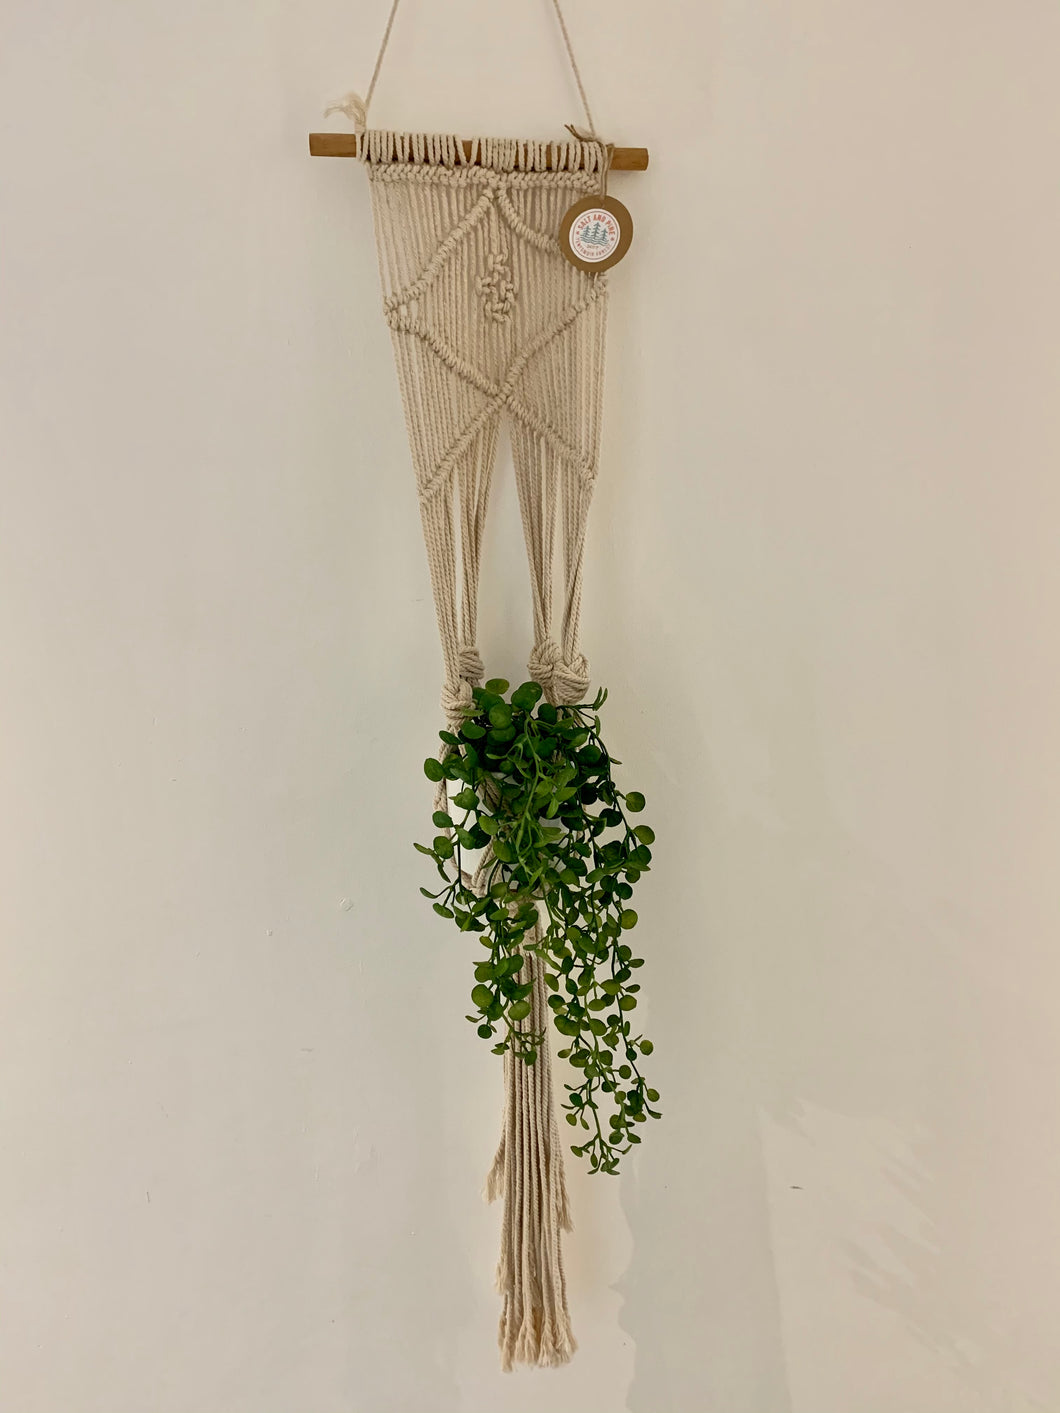 Macrame Wall Hanging - Hanging basket*